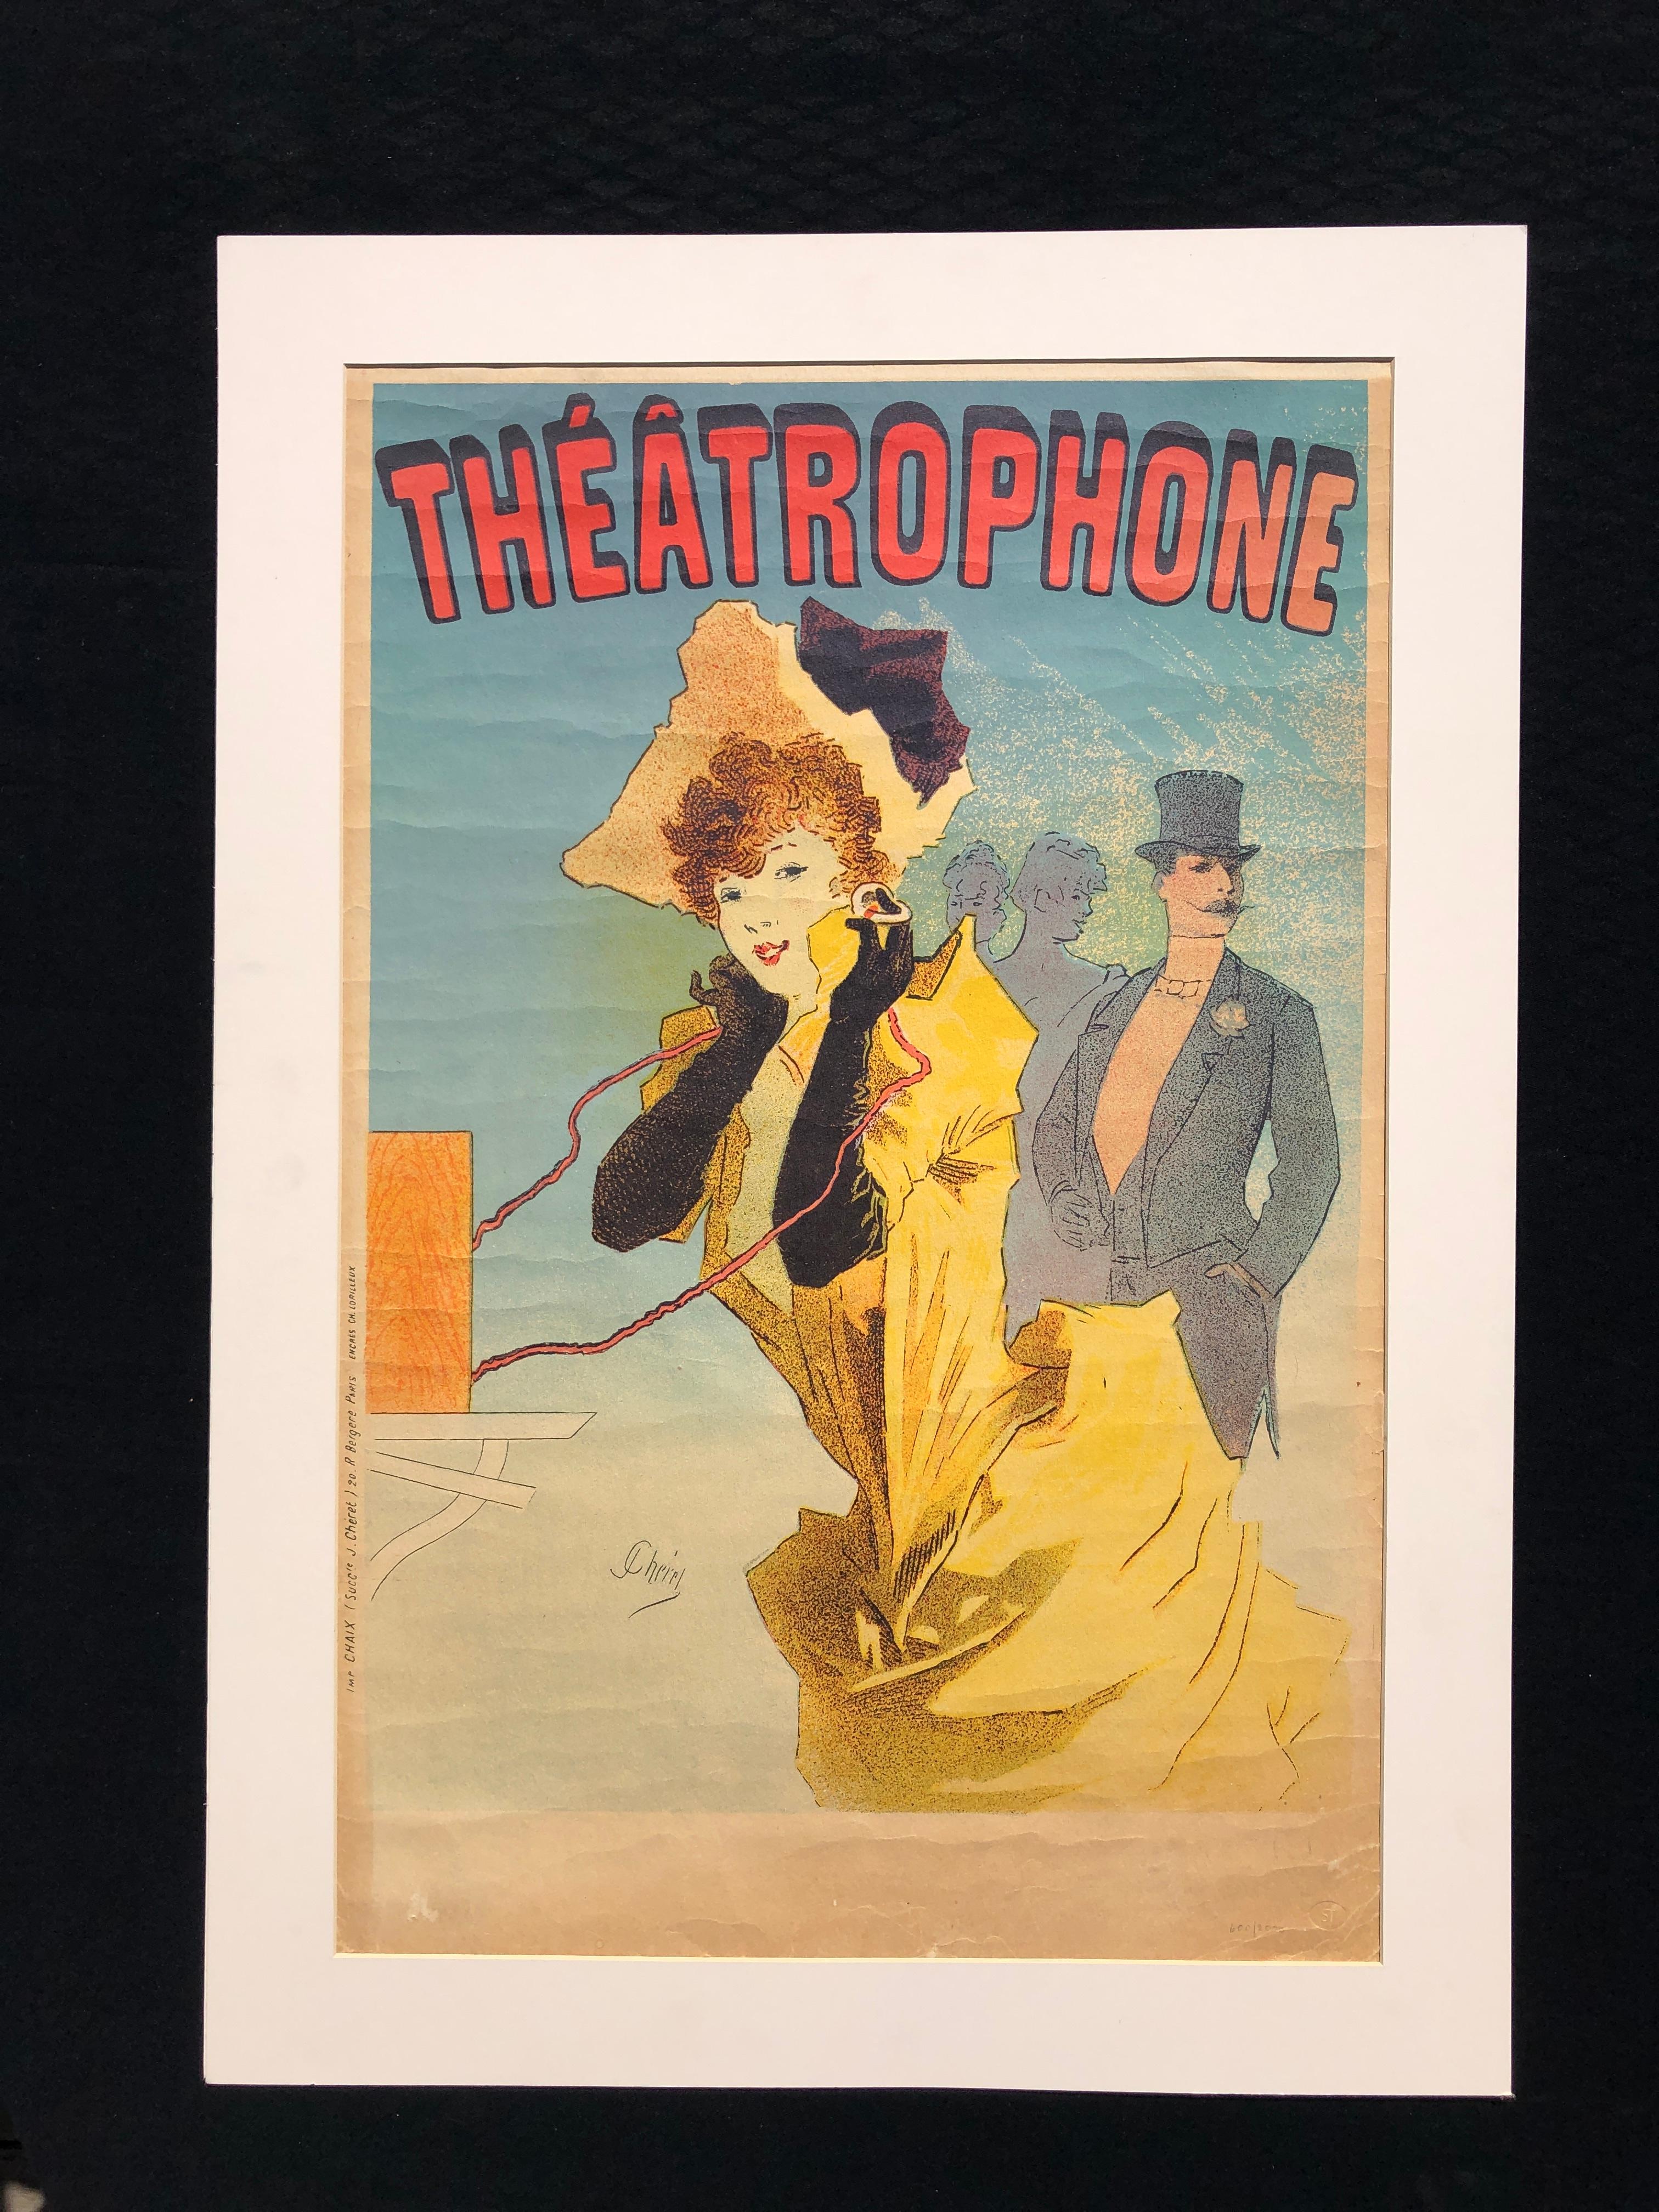 Le Théâtrophone - Print by Jules Chéret